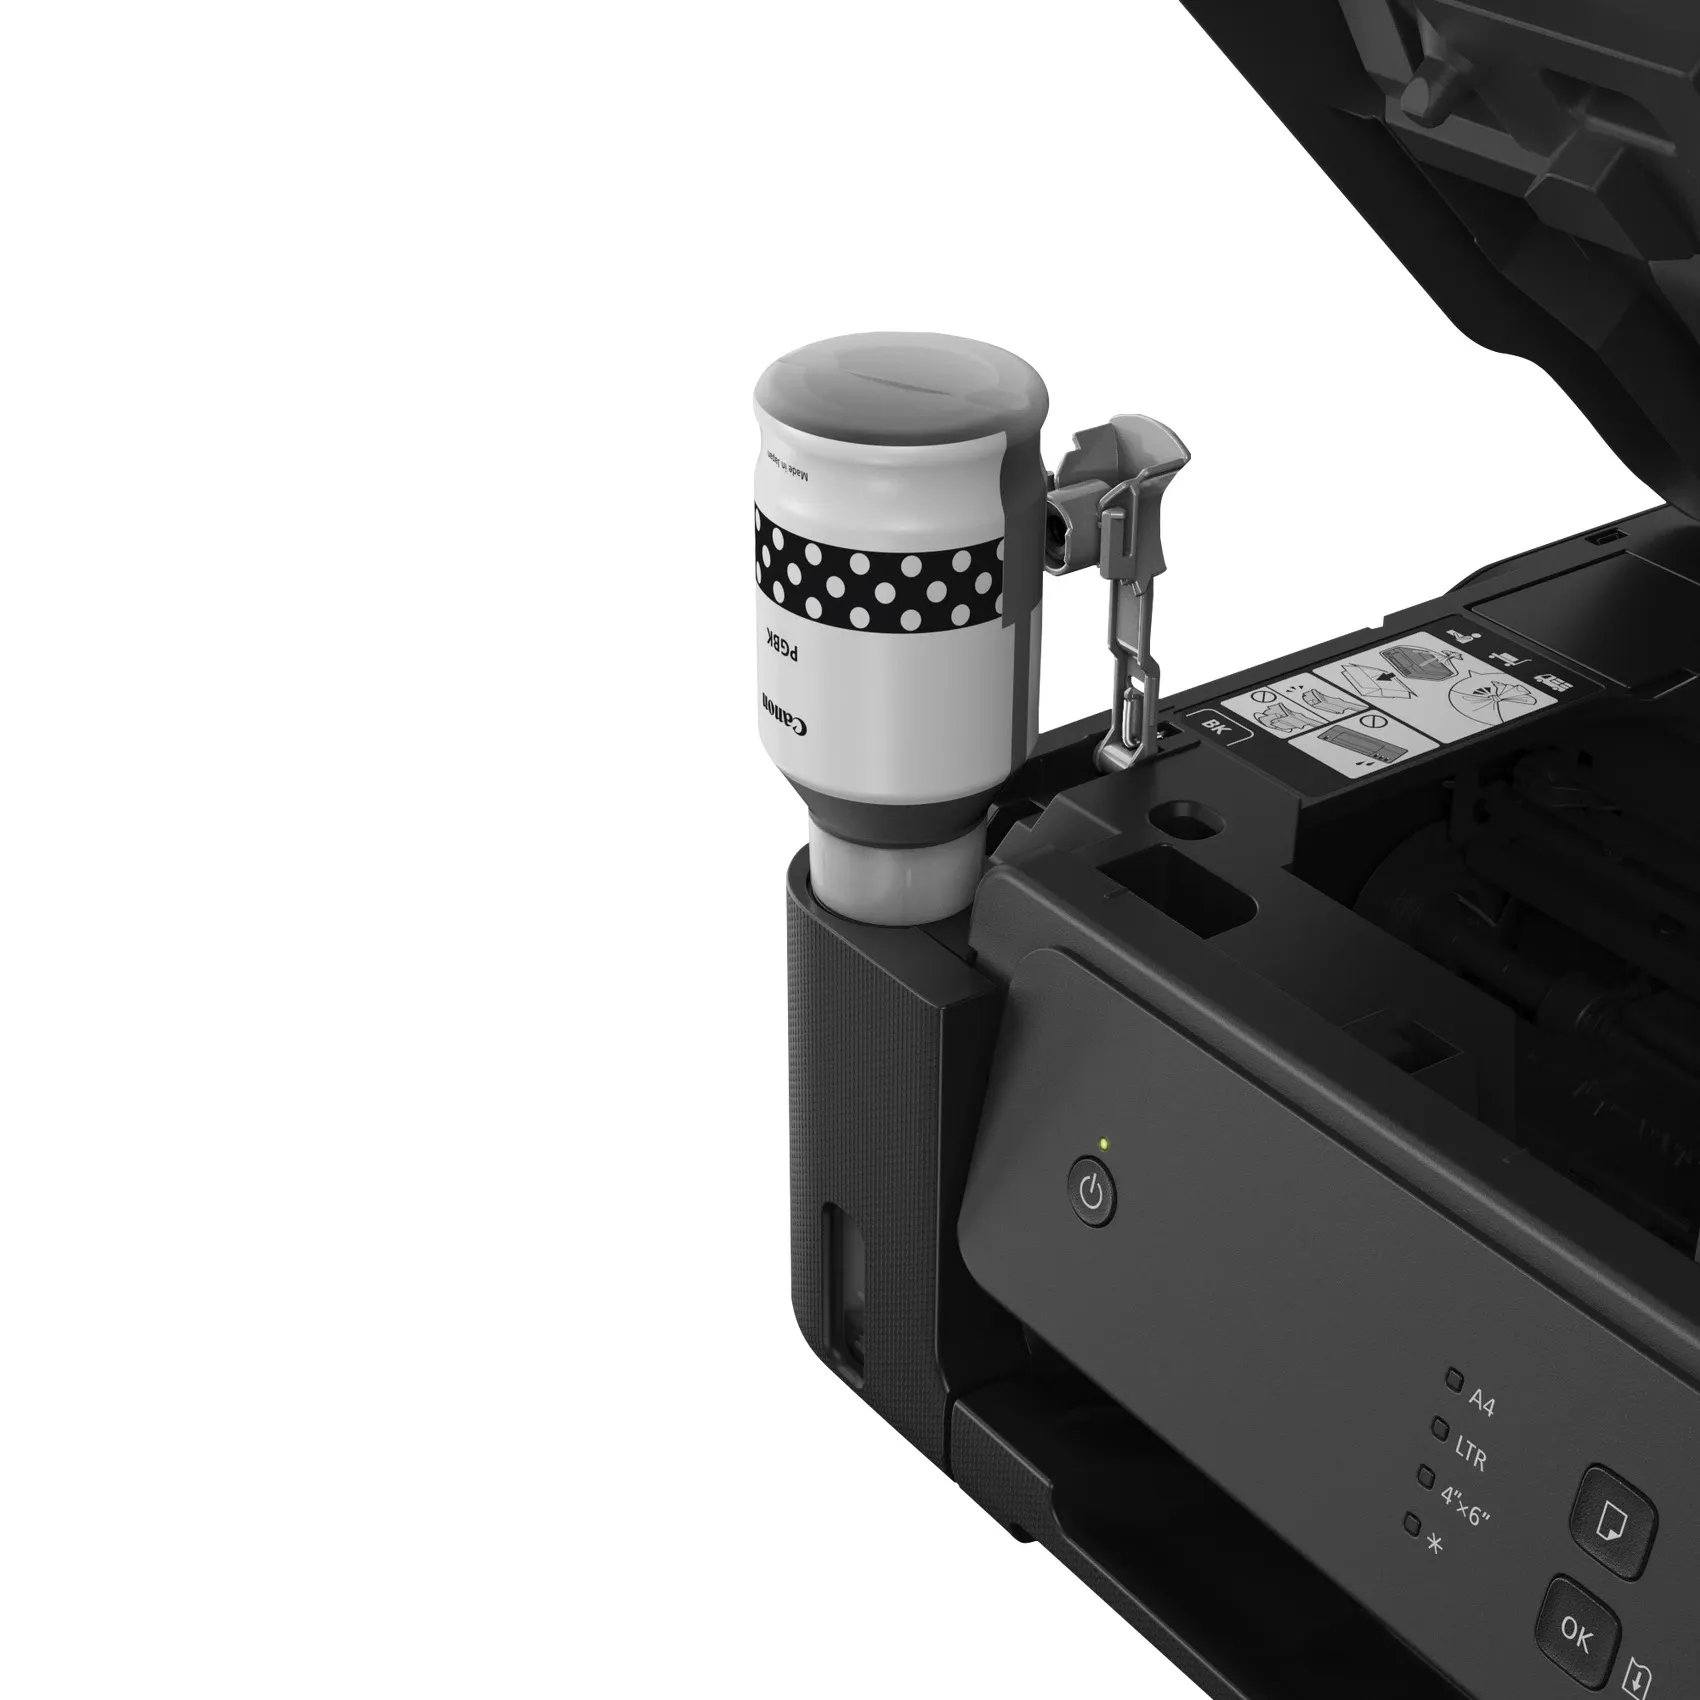 Vente CANON PIXMA G1530 BK Inkjet Multifuction Printer A4 Canon au meilleur prix - visuel 4